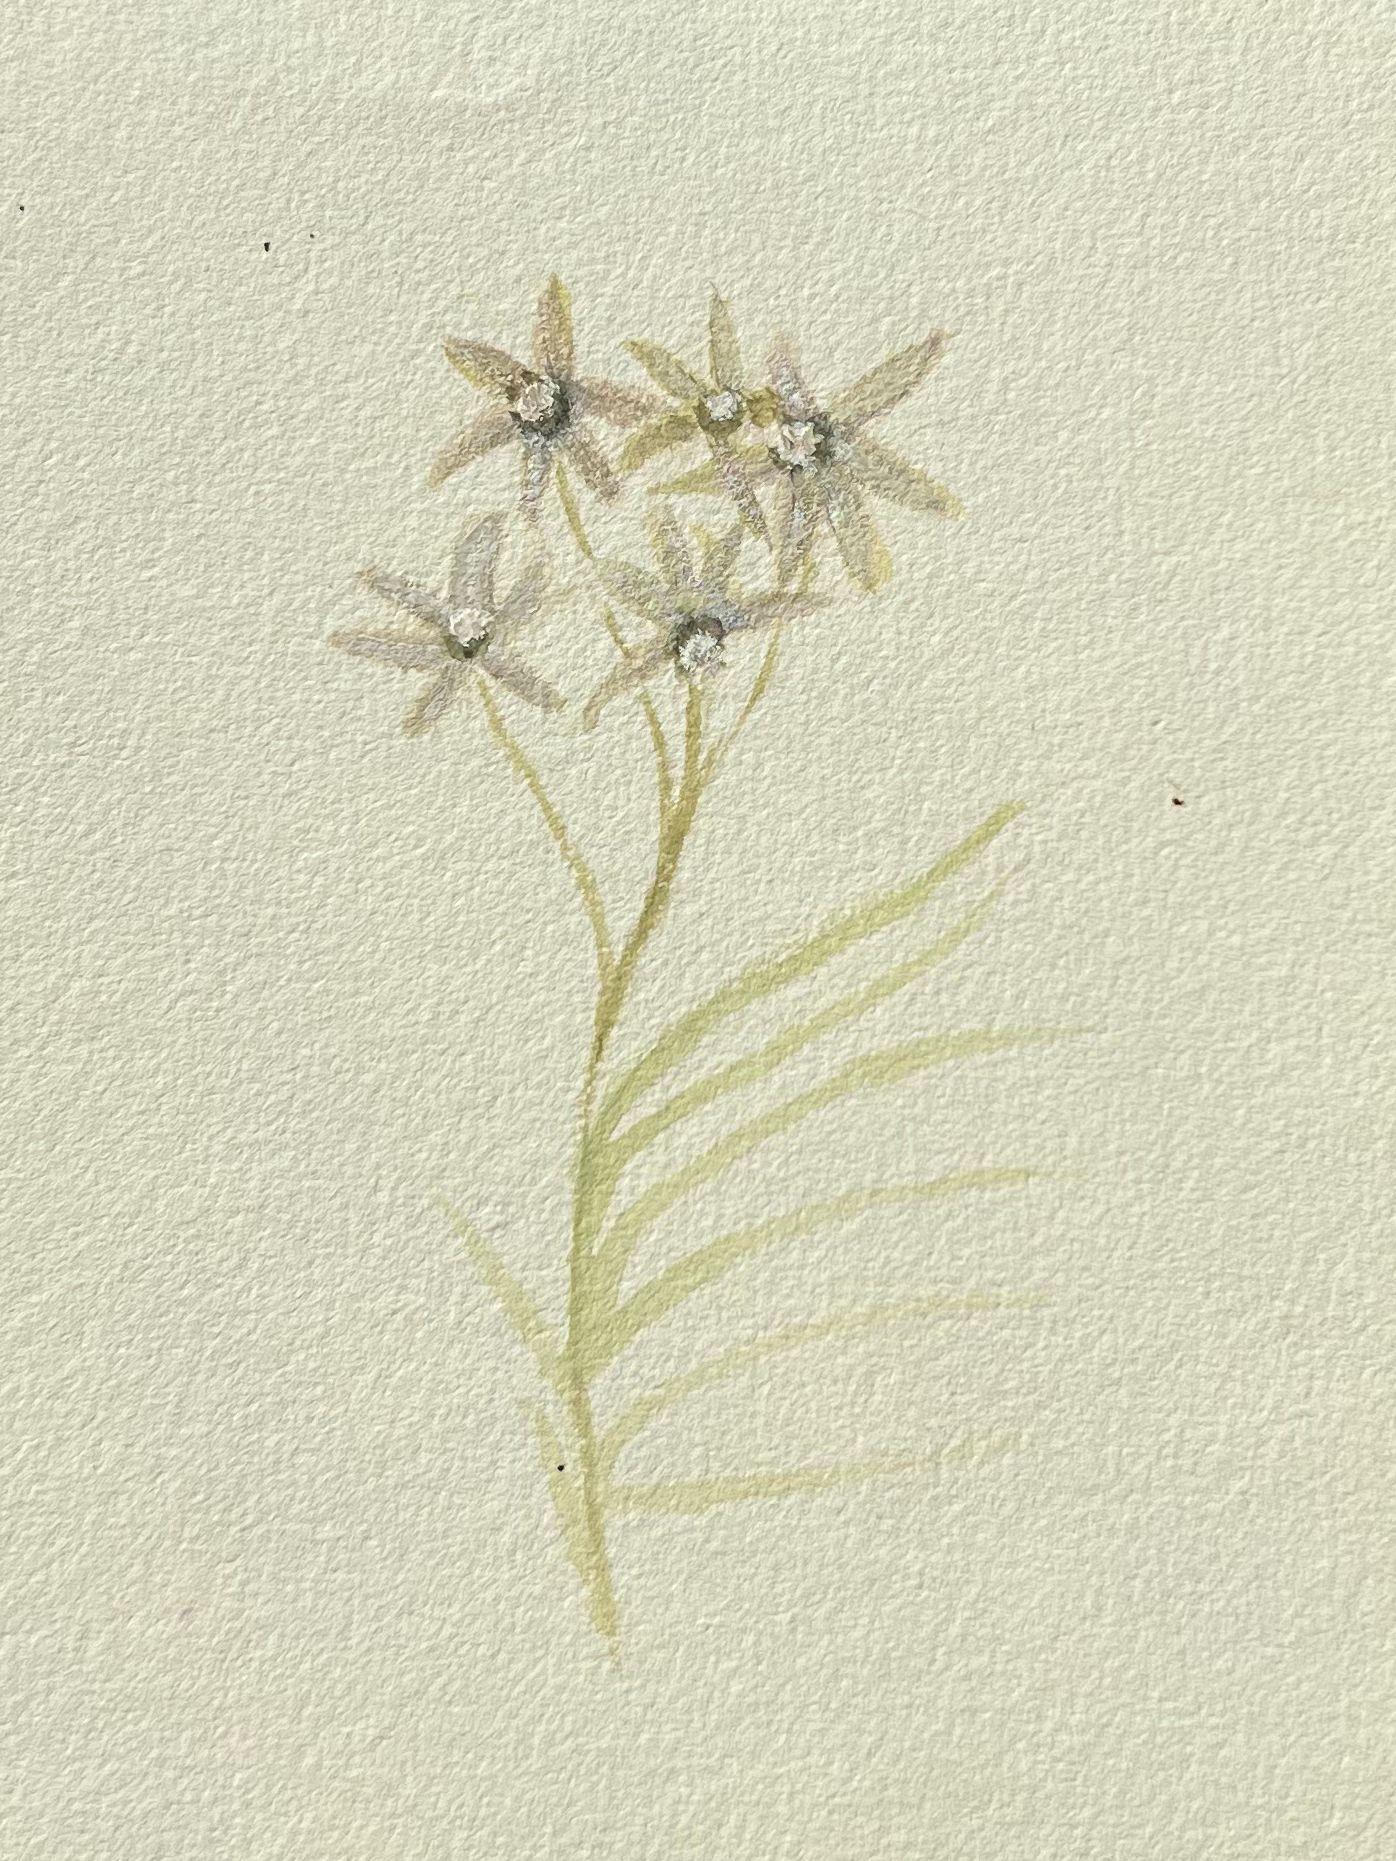 Feines antikes britisches botanisches Gemälde, weiße Centaurium-Blume, Centaurium – Art von Caroline Worsley